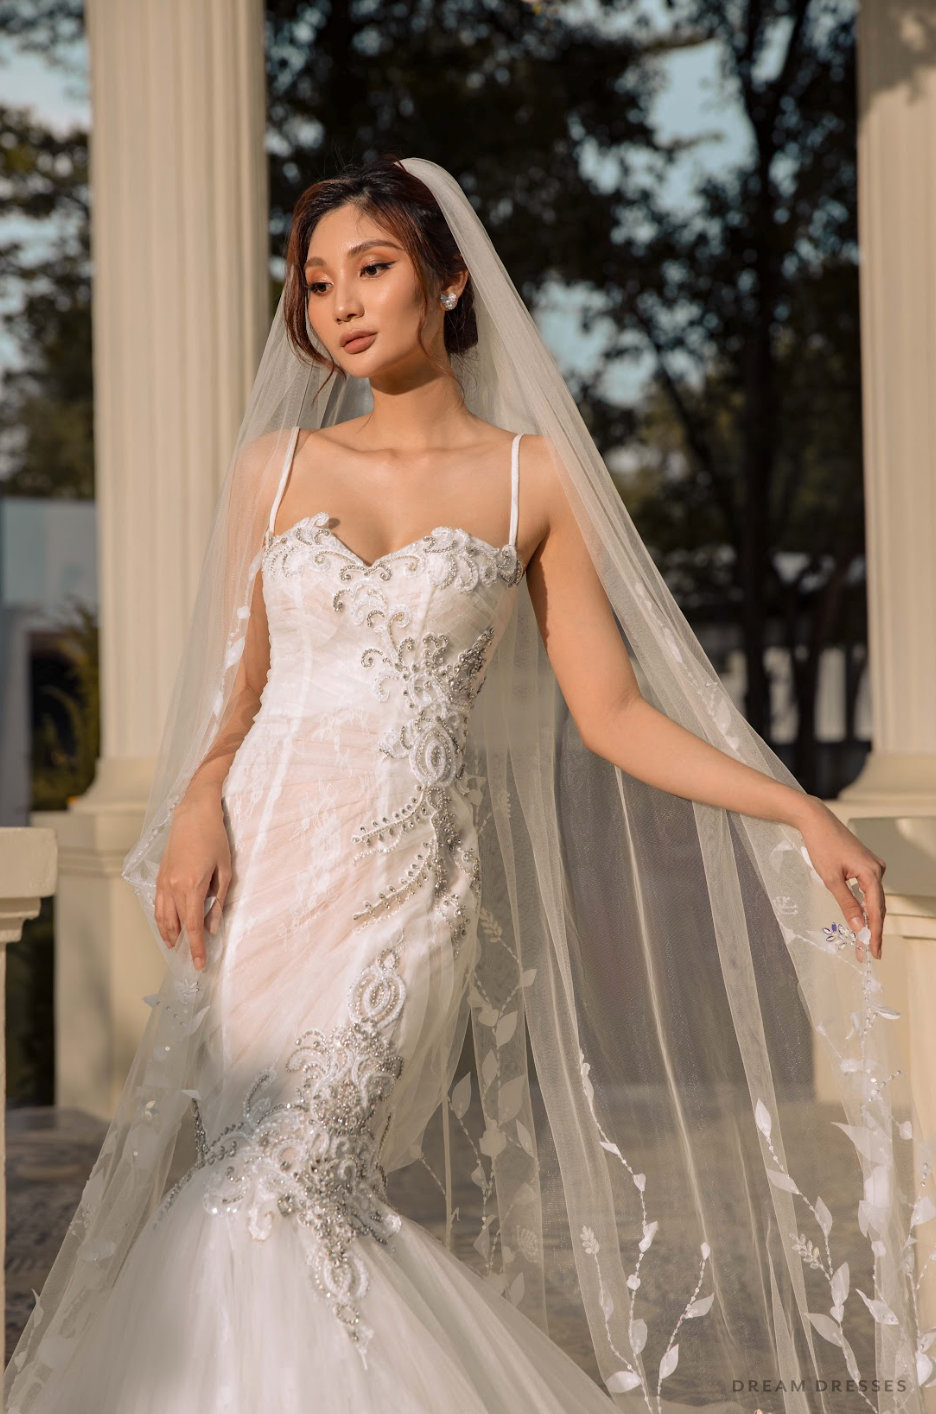 Luxurious 3D Floral Lace Bridal Veil